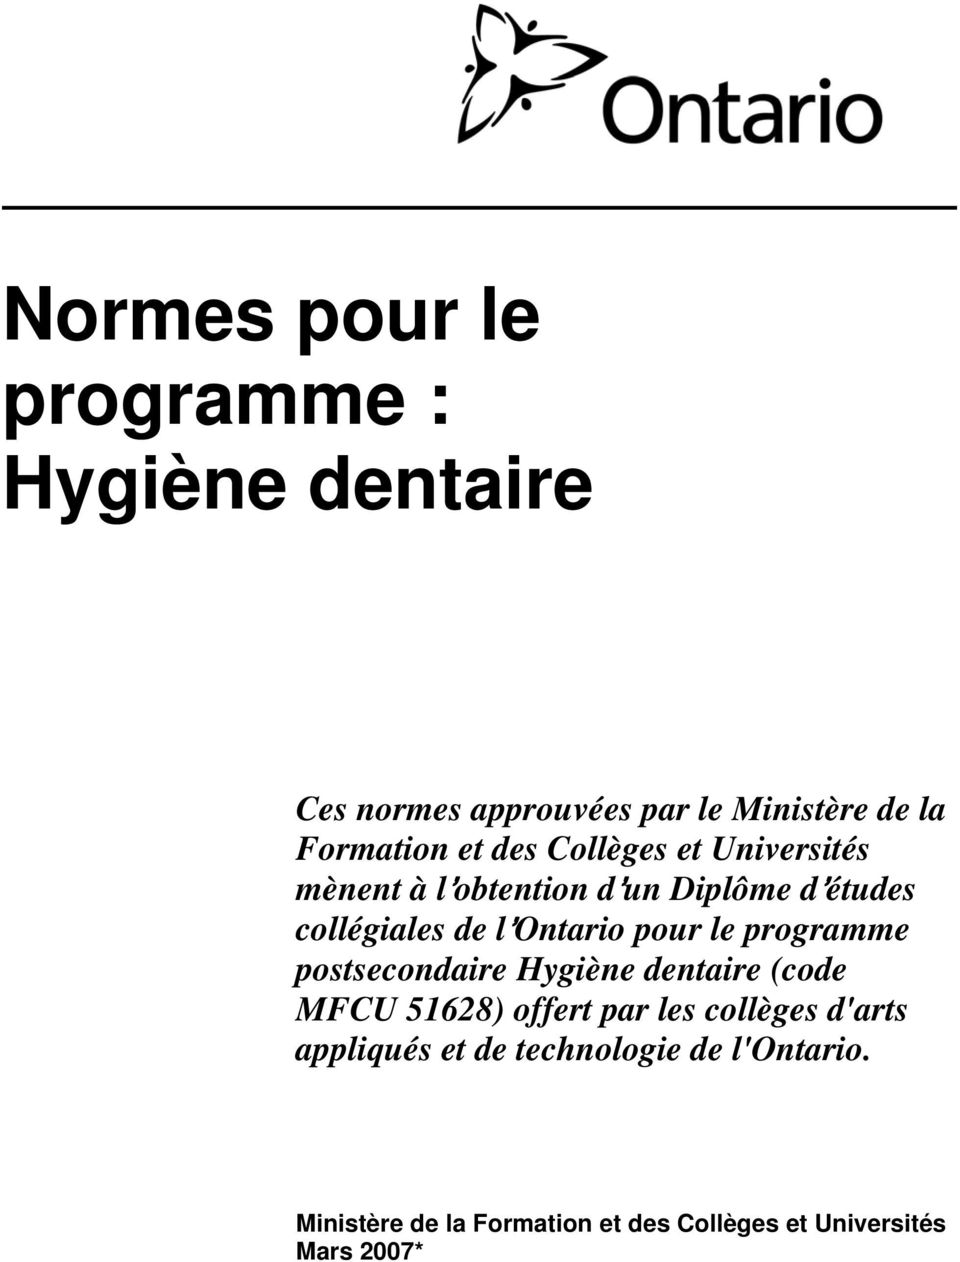 le programme postsecondaire Hygiène dentaire (code MFCU 51628) offert par les collèges d'arts